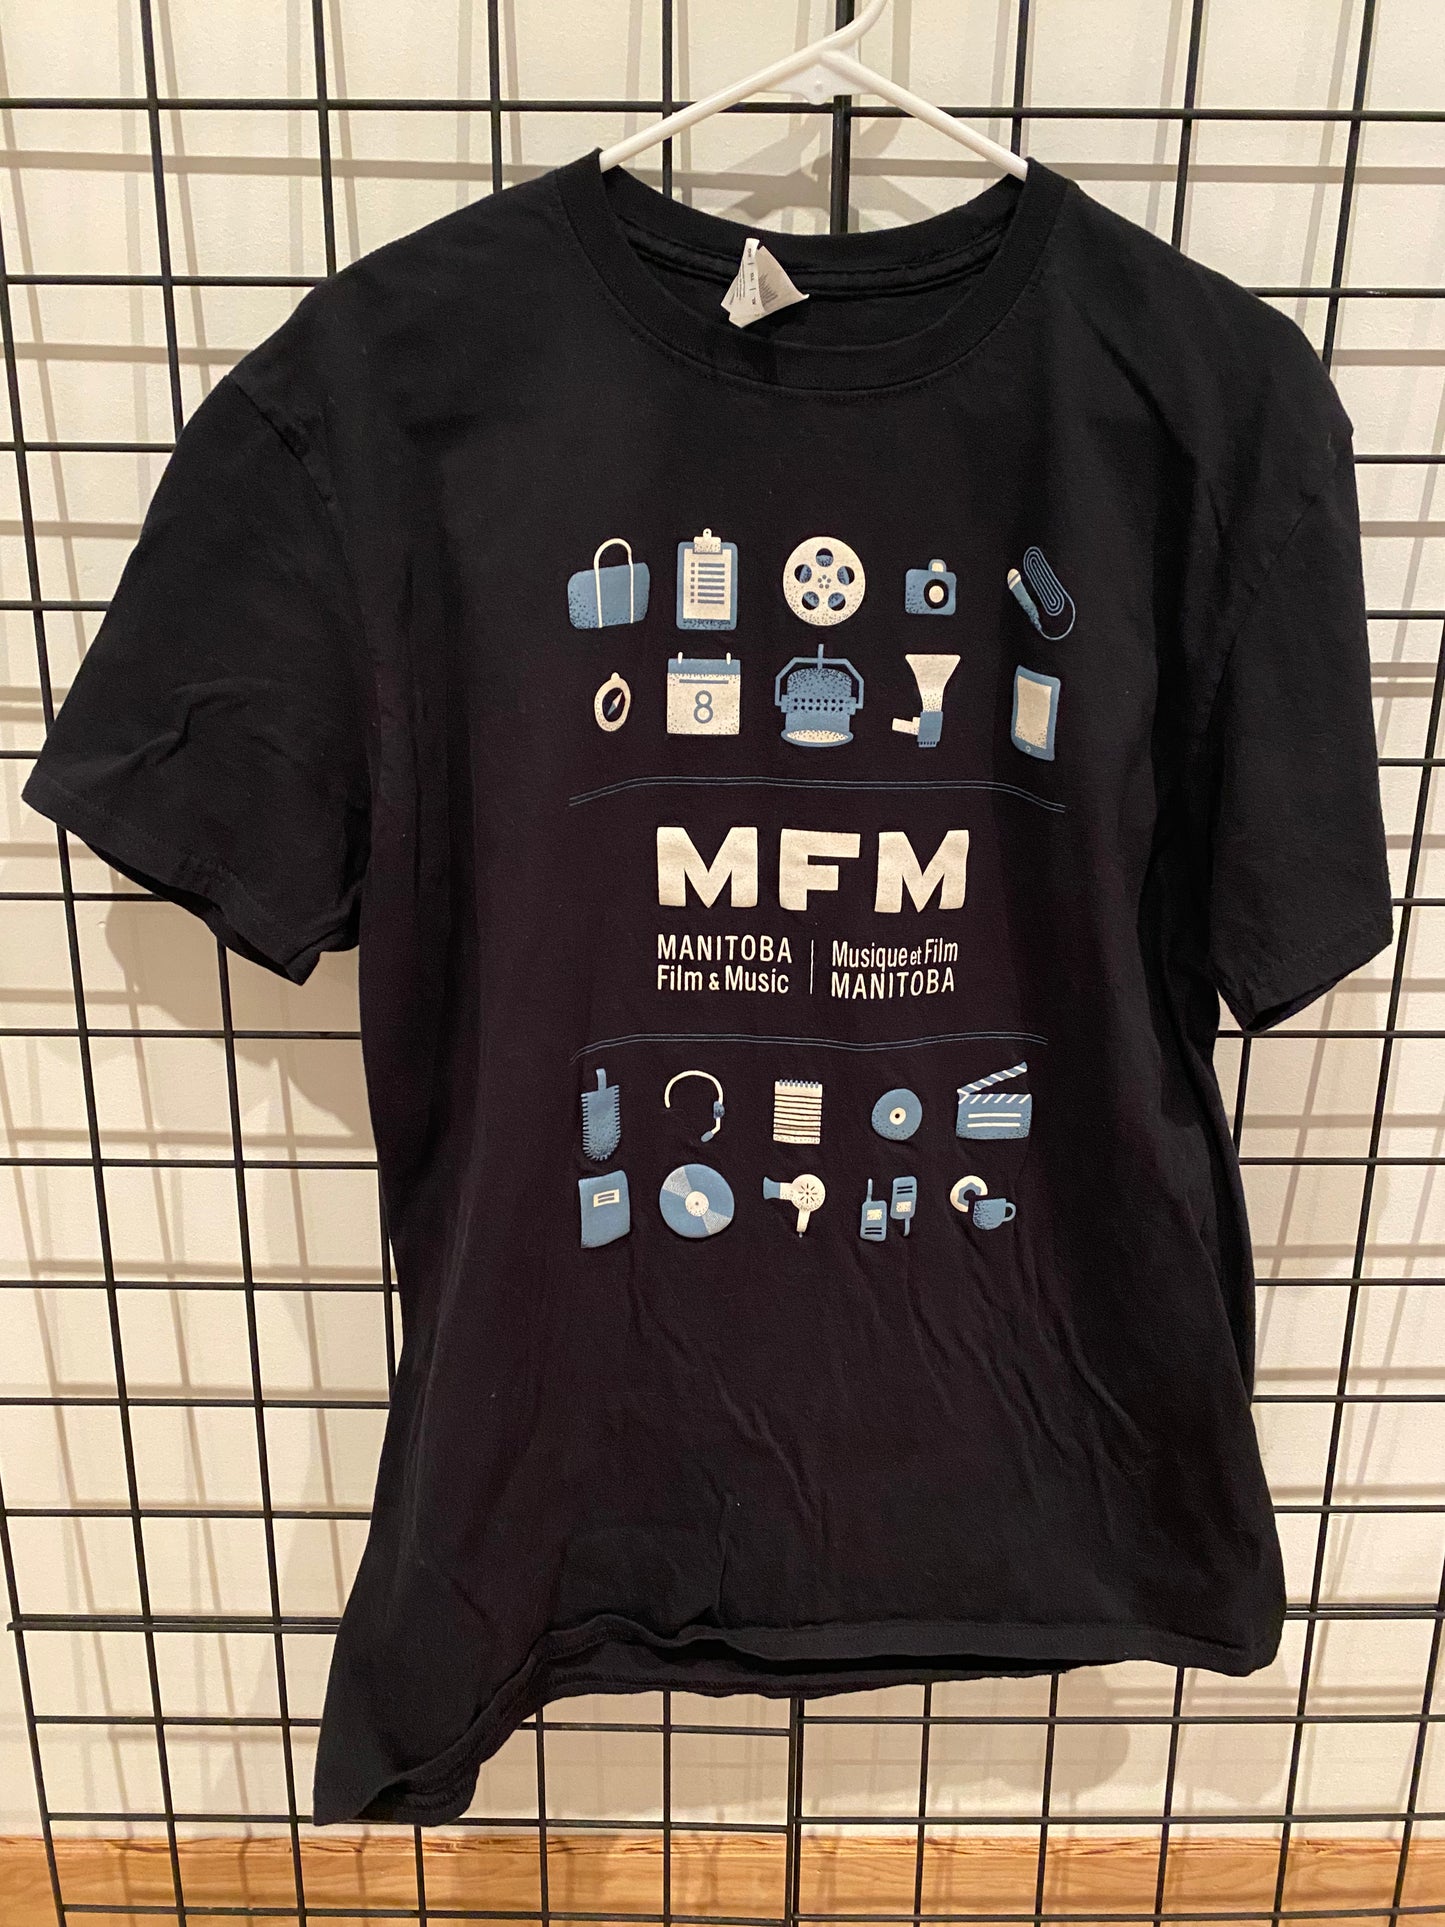 Manitoba Film and Music - T-Shirt